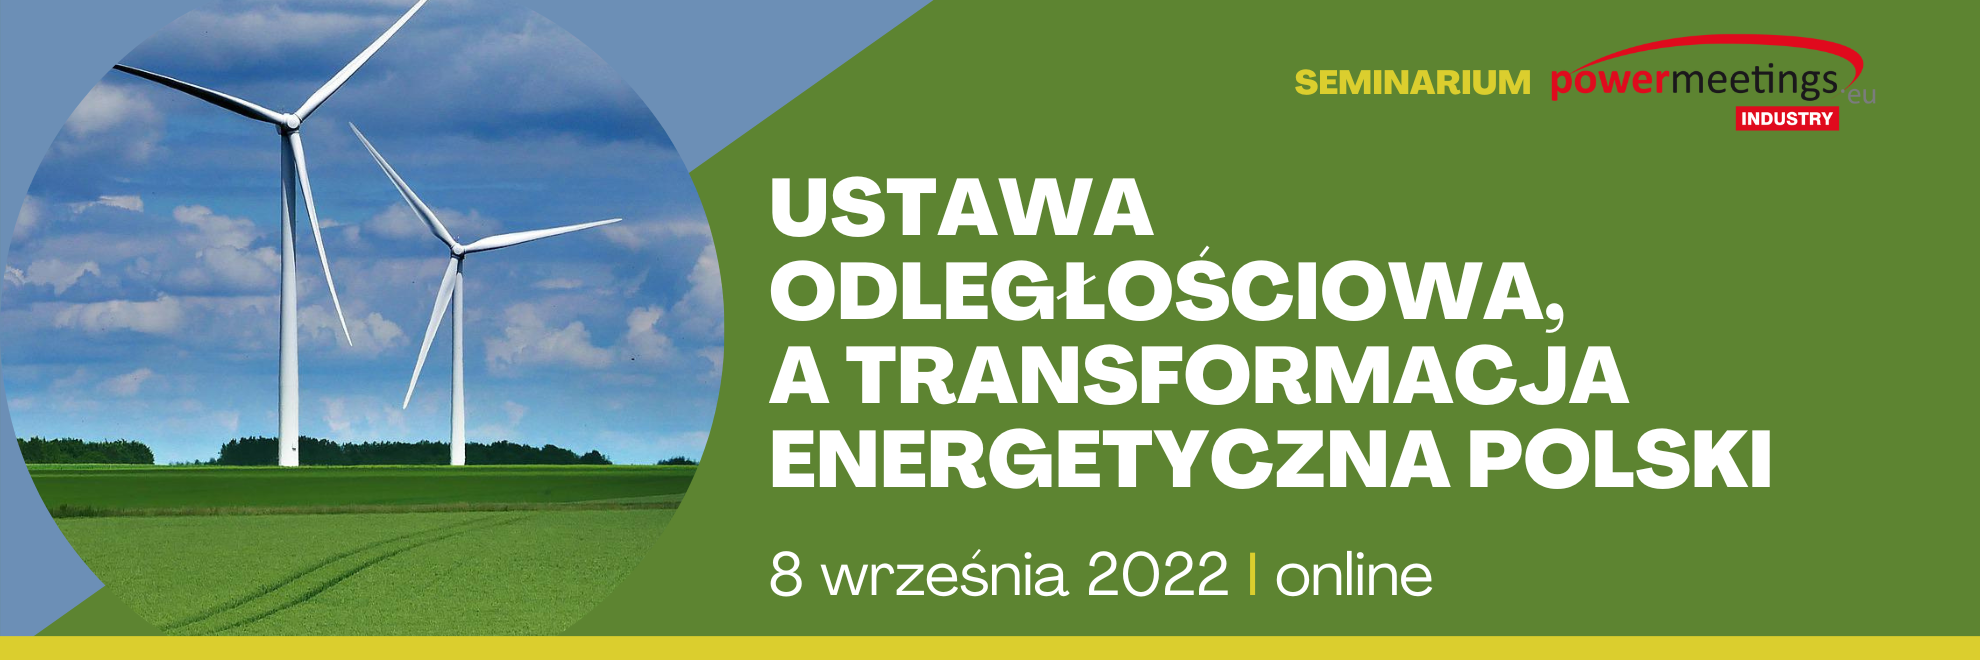 Ustawa odległościowa, a transformacja energetyczna Polski